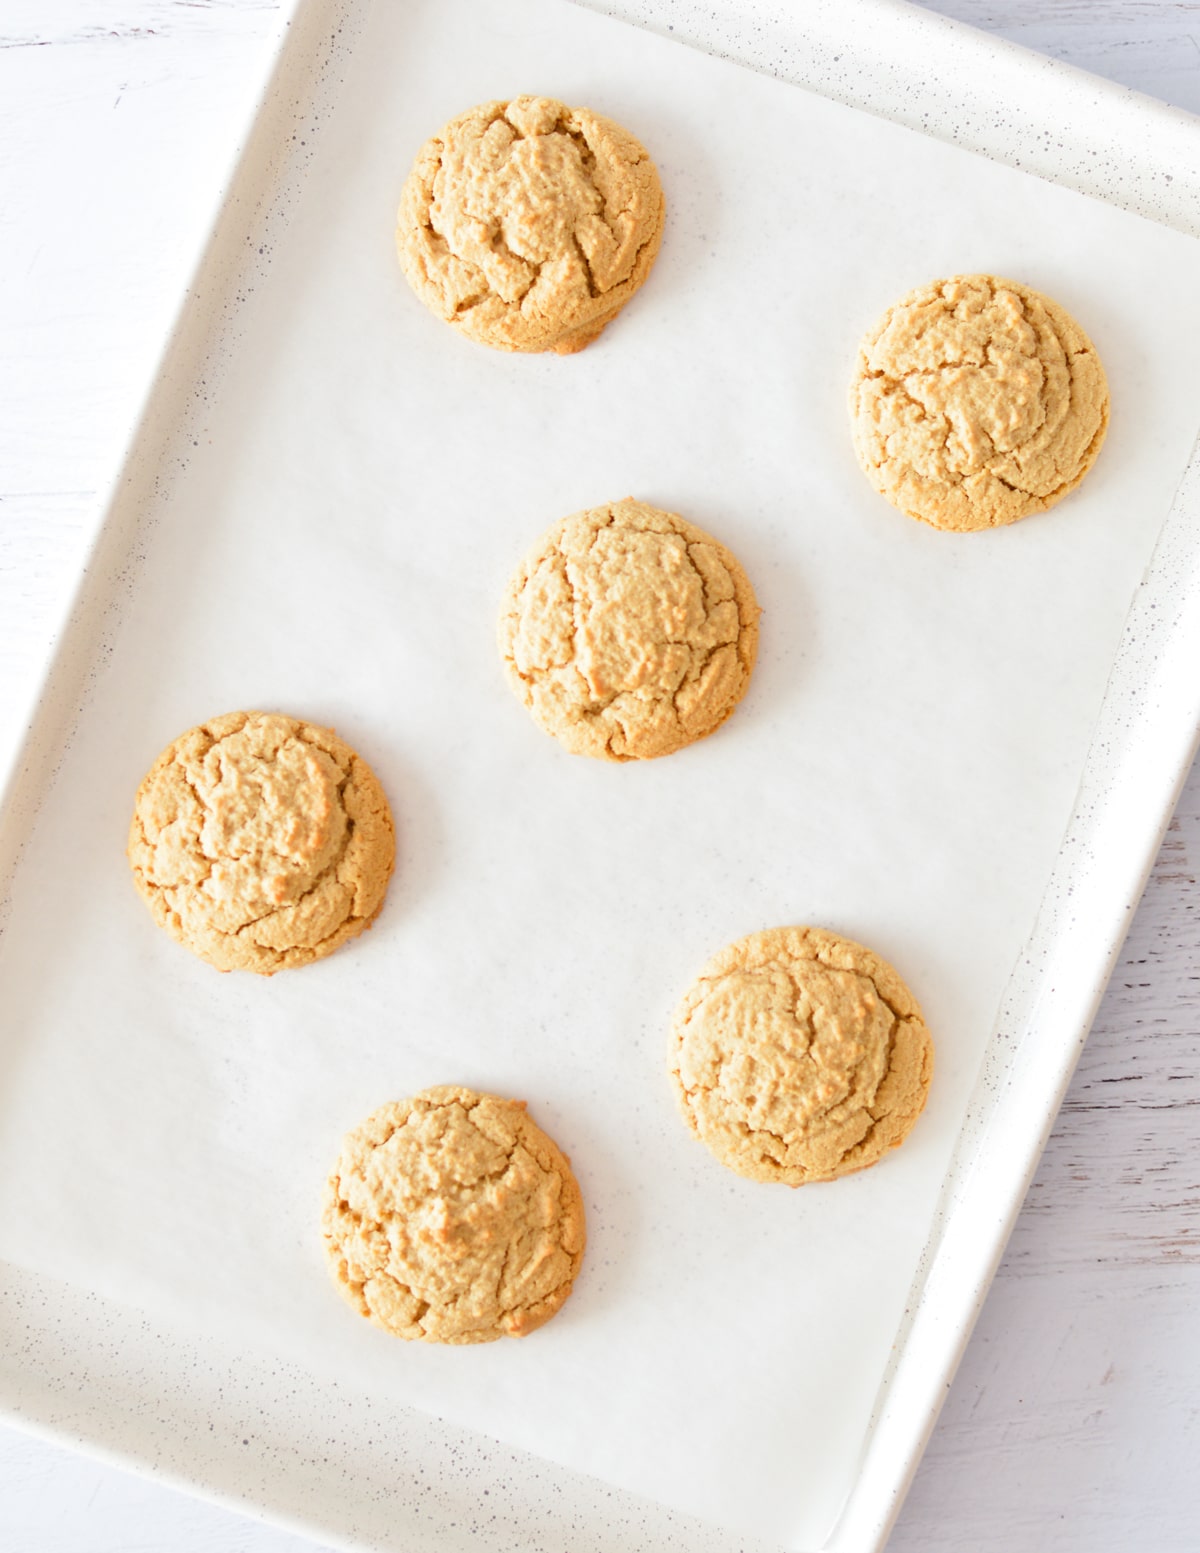 peanut butter cookies on a sheet pan.